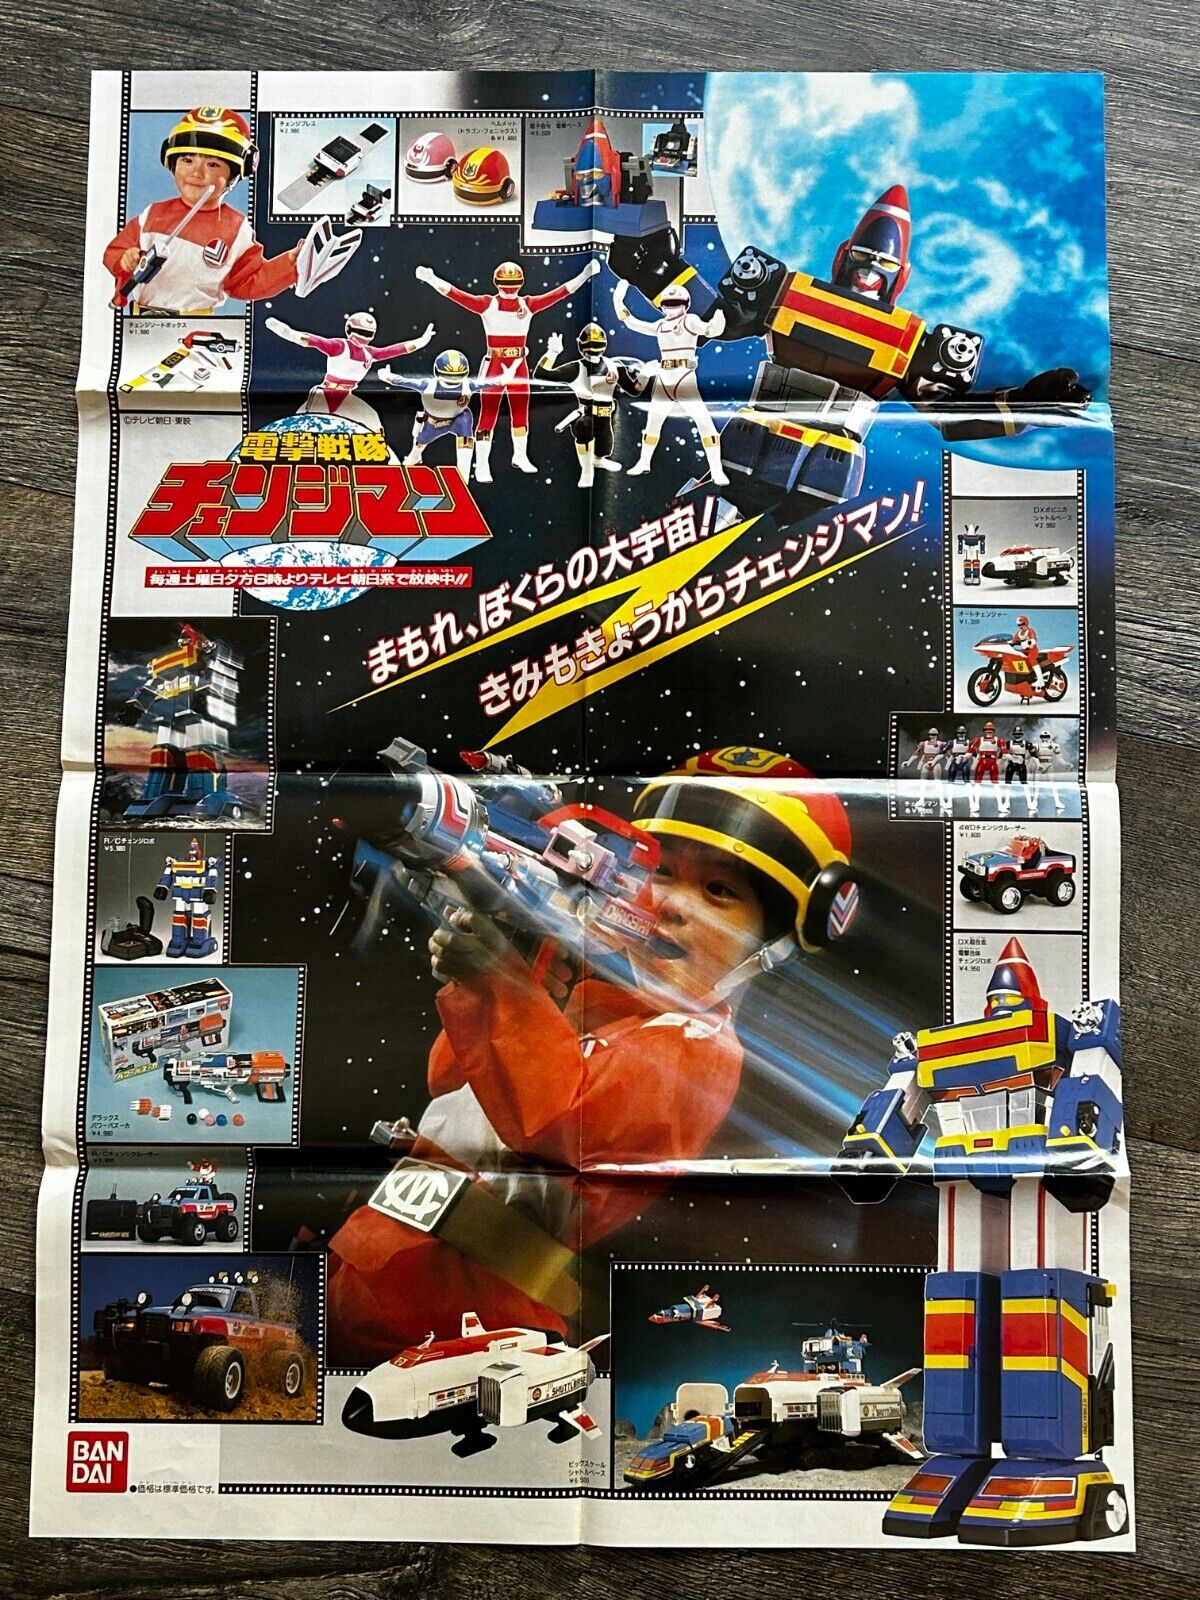 DENGEKI SENTAI CHANGEMAN Bandai Toy Figure Robot Promo Poster Japan Tokusatsu